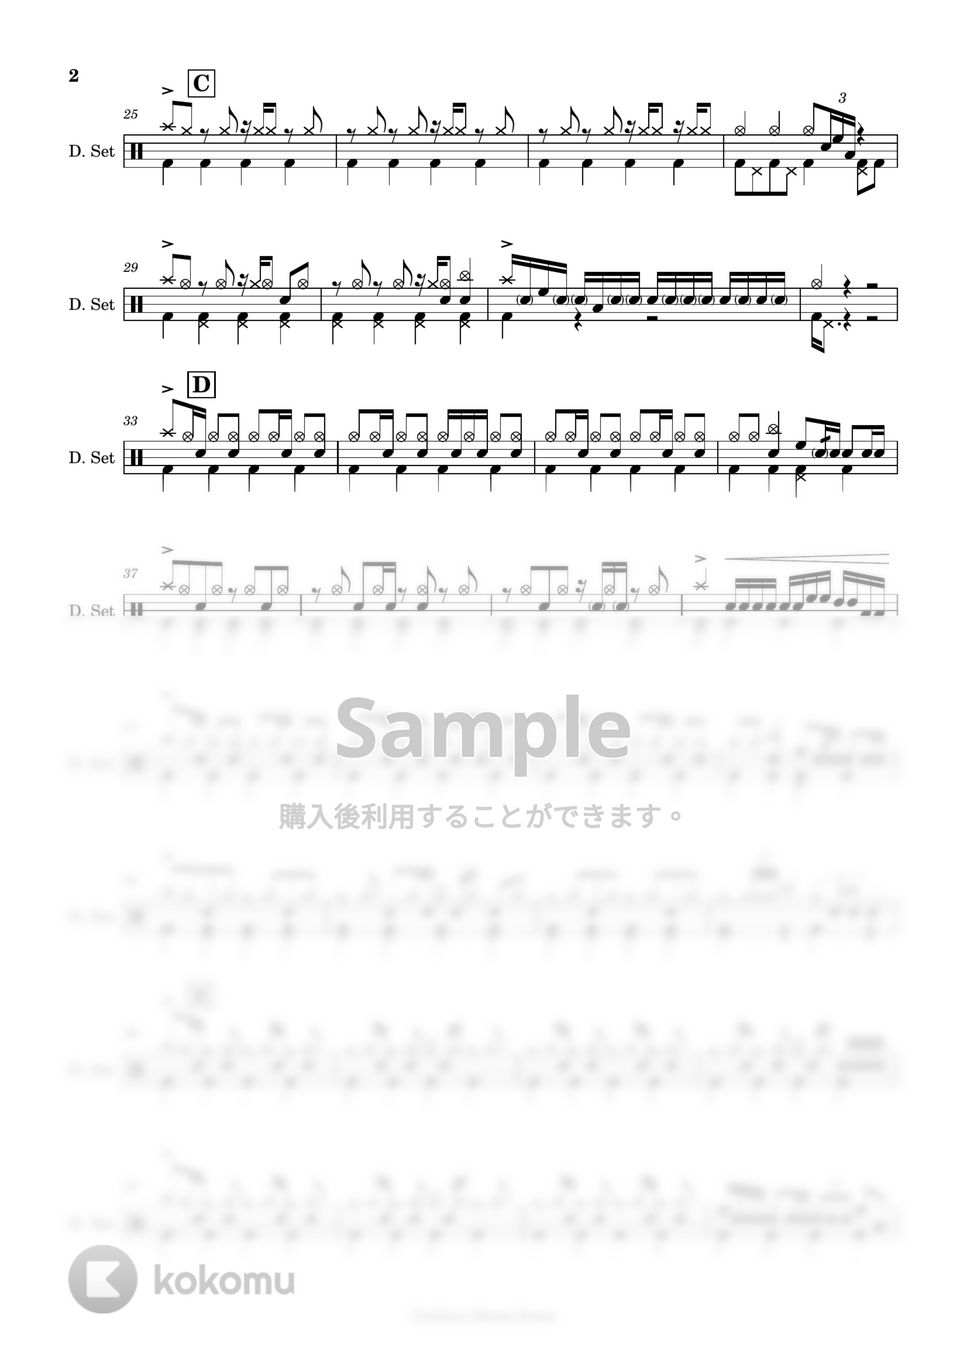 バルーン - 【ドラム楽譜】 シャルル / バルーン - Charles / Balloon 【DrumScore】 by Cookie's Drum Score